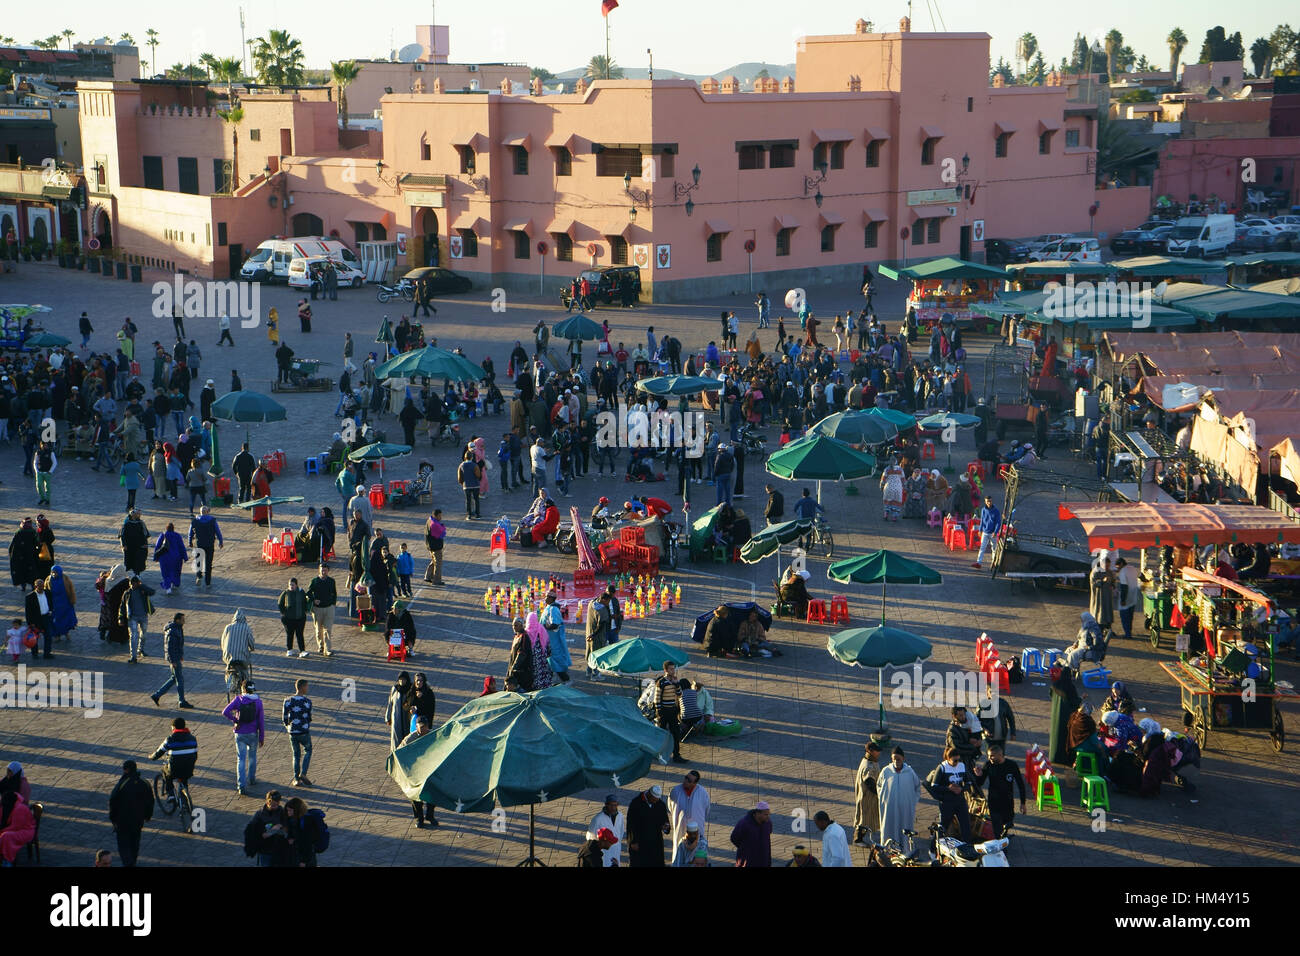 Panorama Jamaa el Fna Marrakesh Marocco Stock Photo